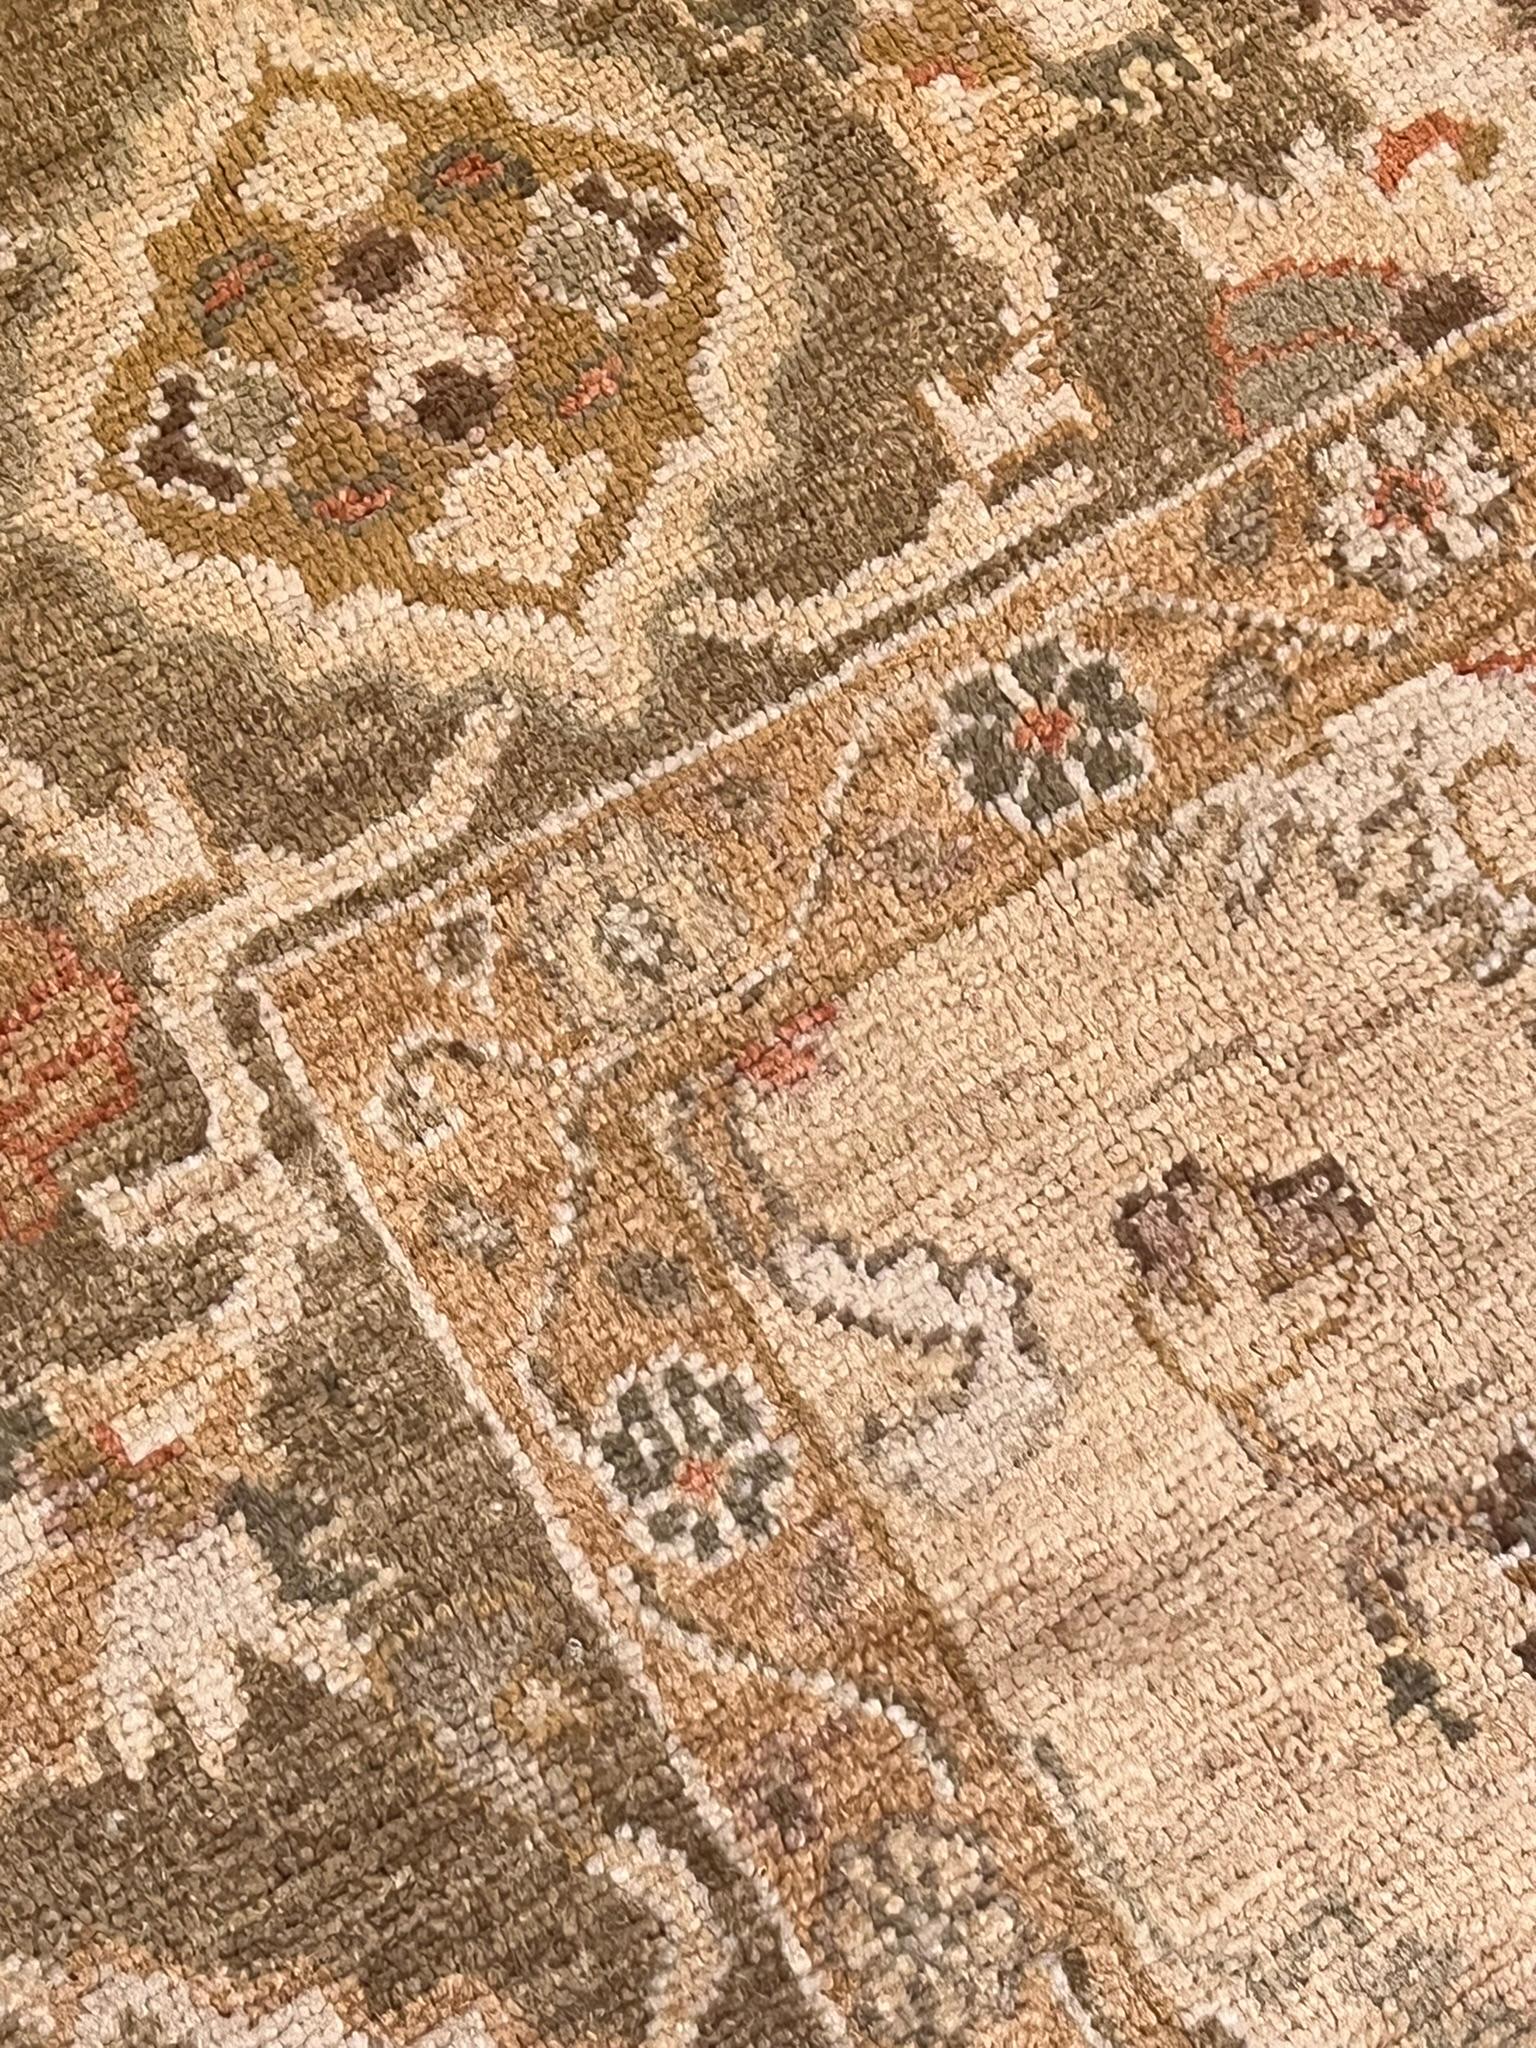 Dies ist ein türkischer Teppich der neuen Generation. Der handgeknüpfte Teppich mit Kett- und Schussfäden aus Wolle greift in Technik und Muster die klassischen Themen der alten Oushak-Teppiche auf, erneuert sie aber in den Farben, die jetzt hell